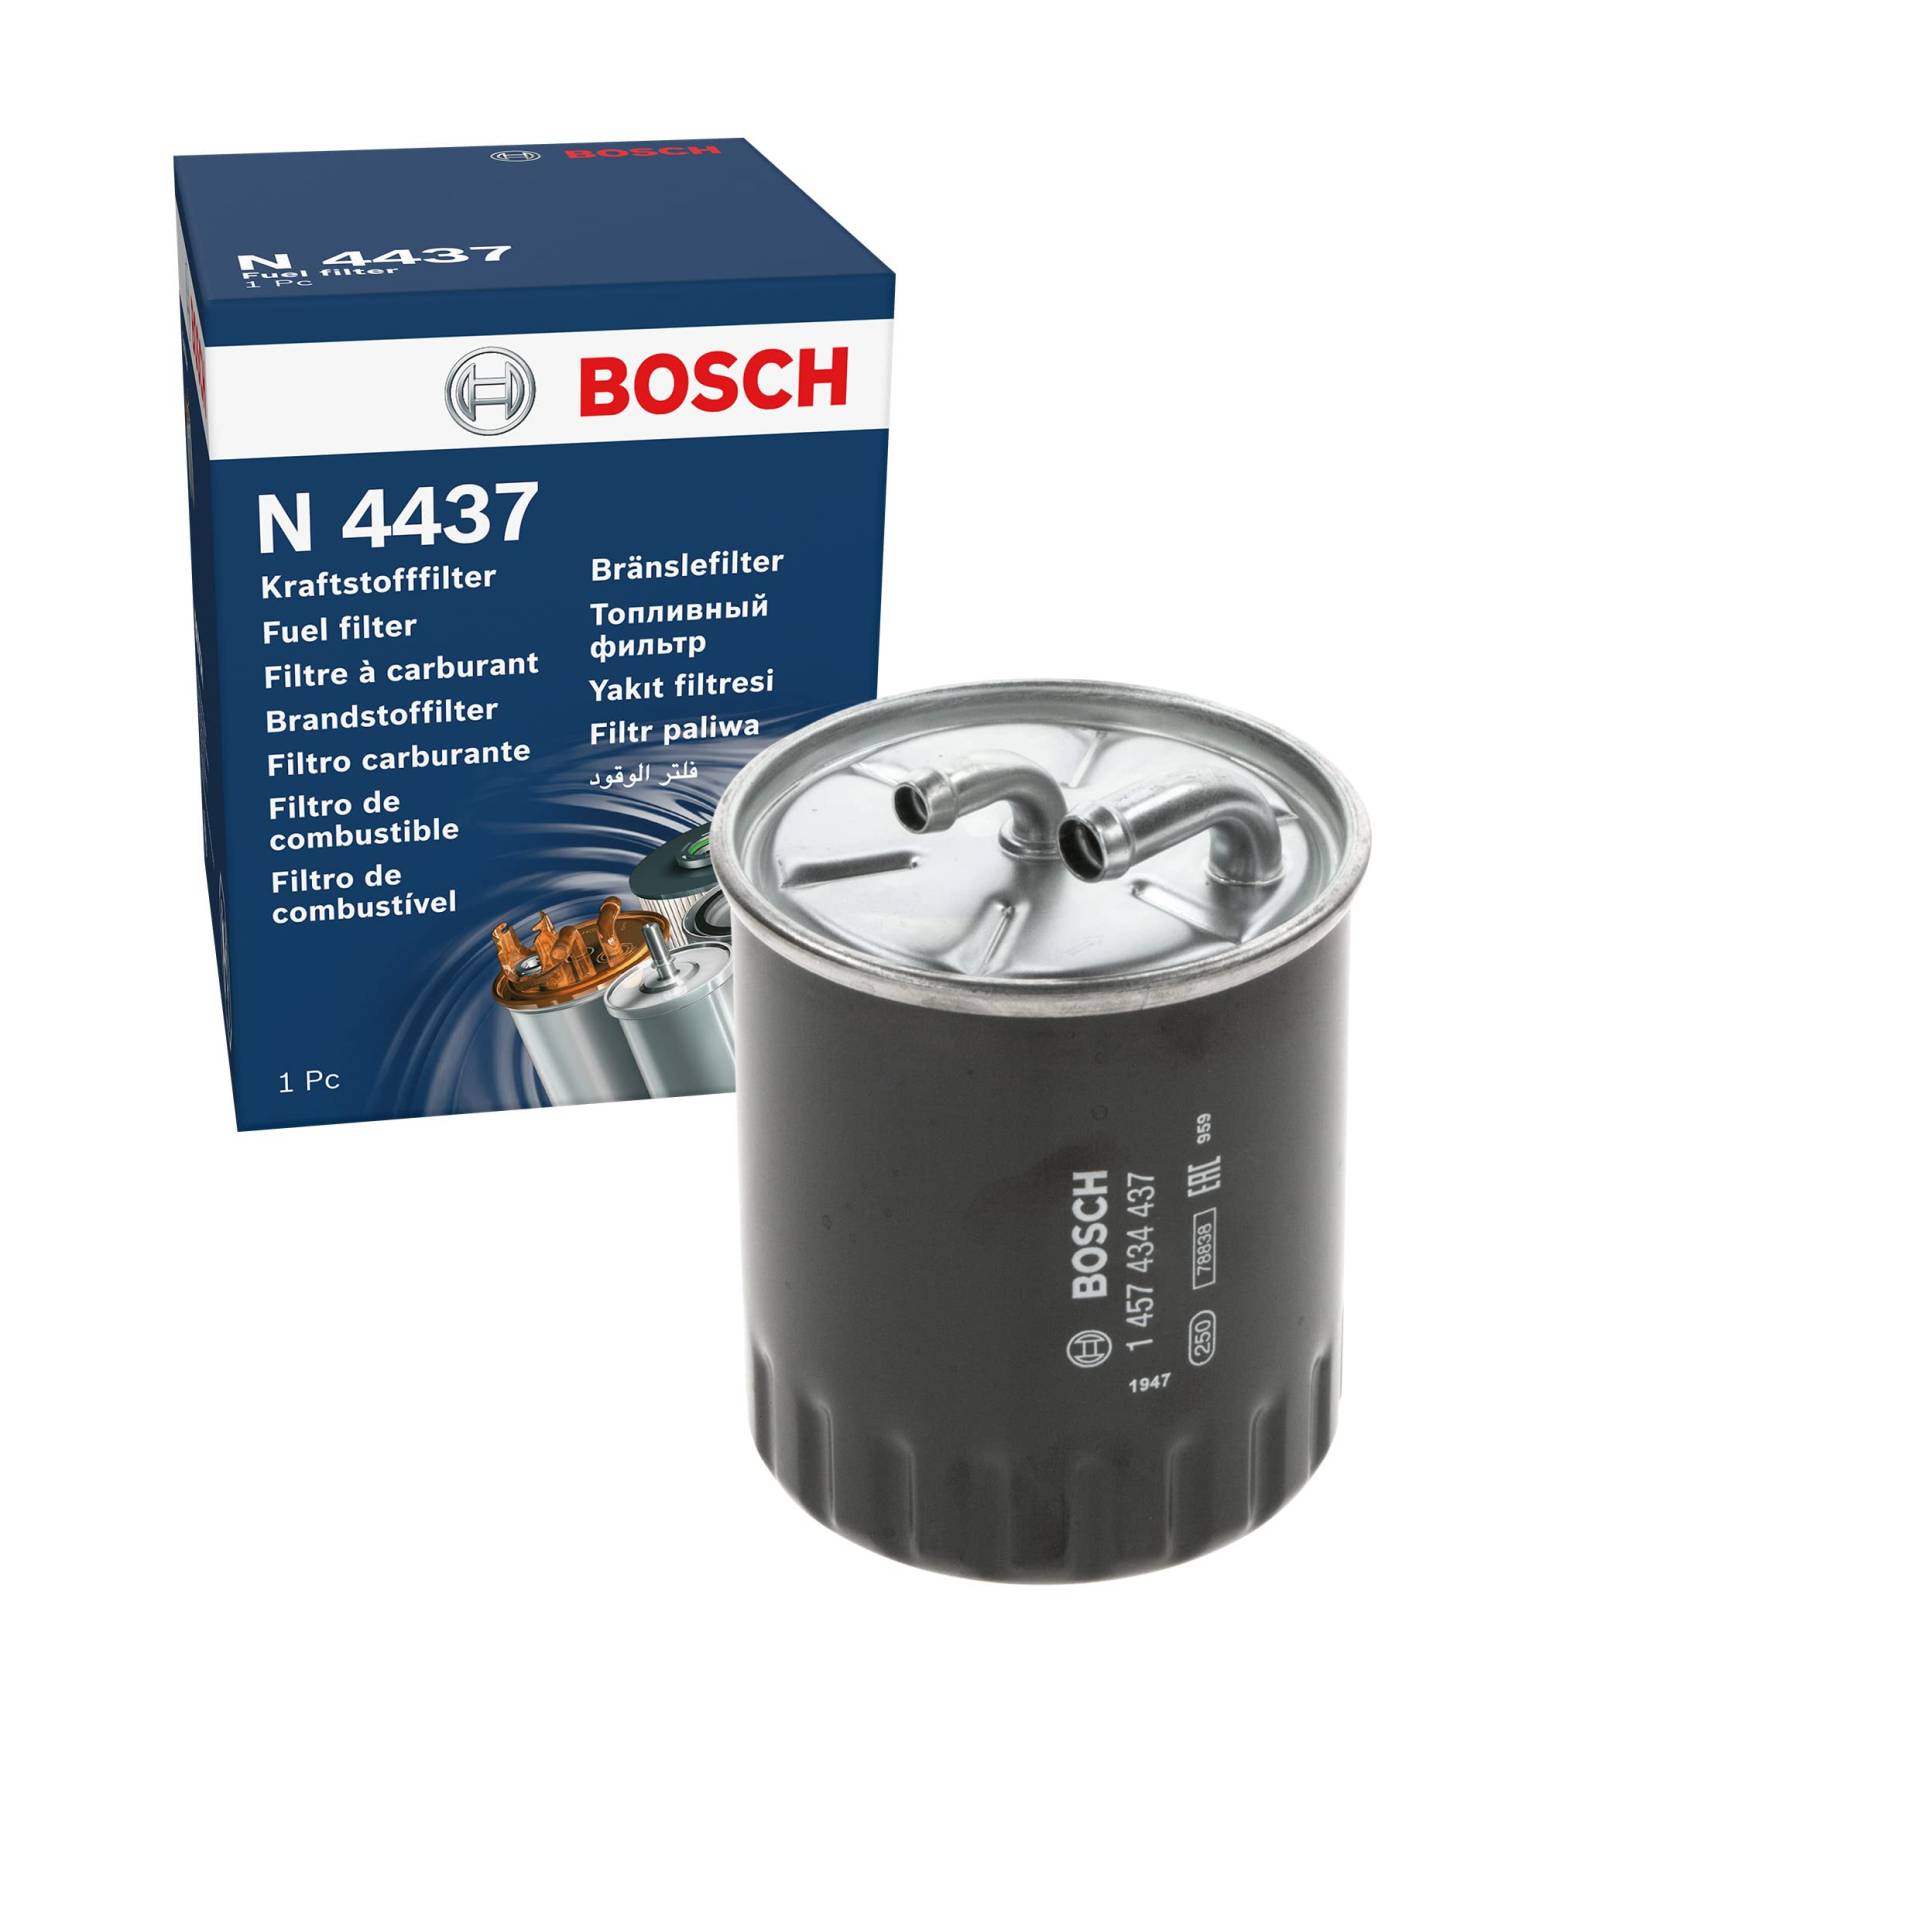 Bosch N4437 - Dieselfilter Auto von Bosch Automotive